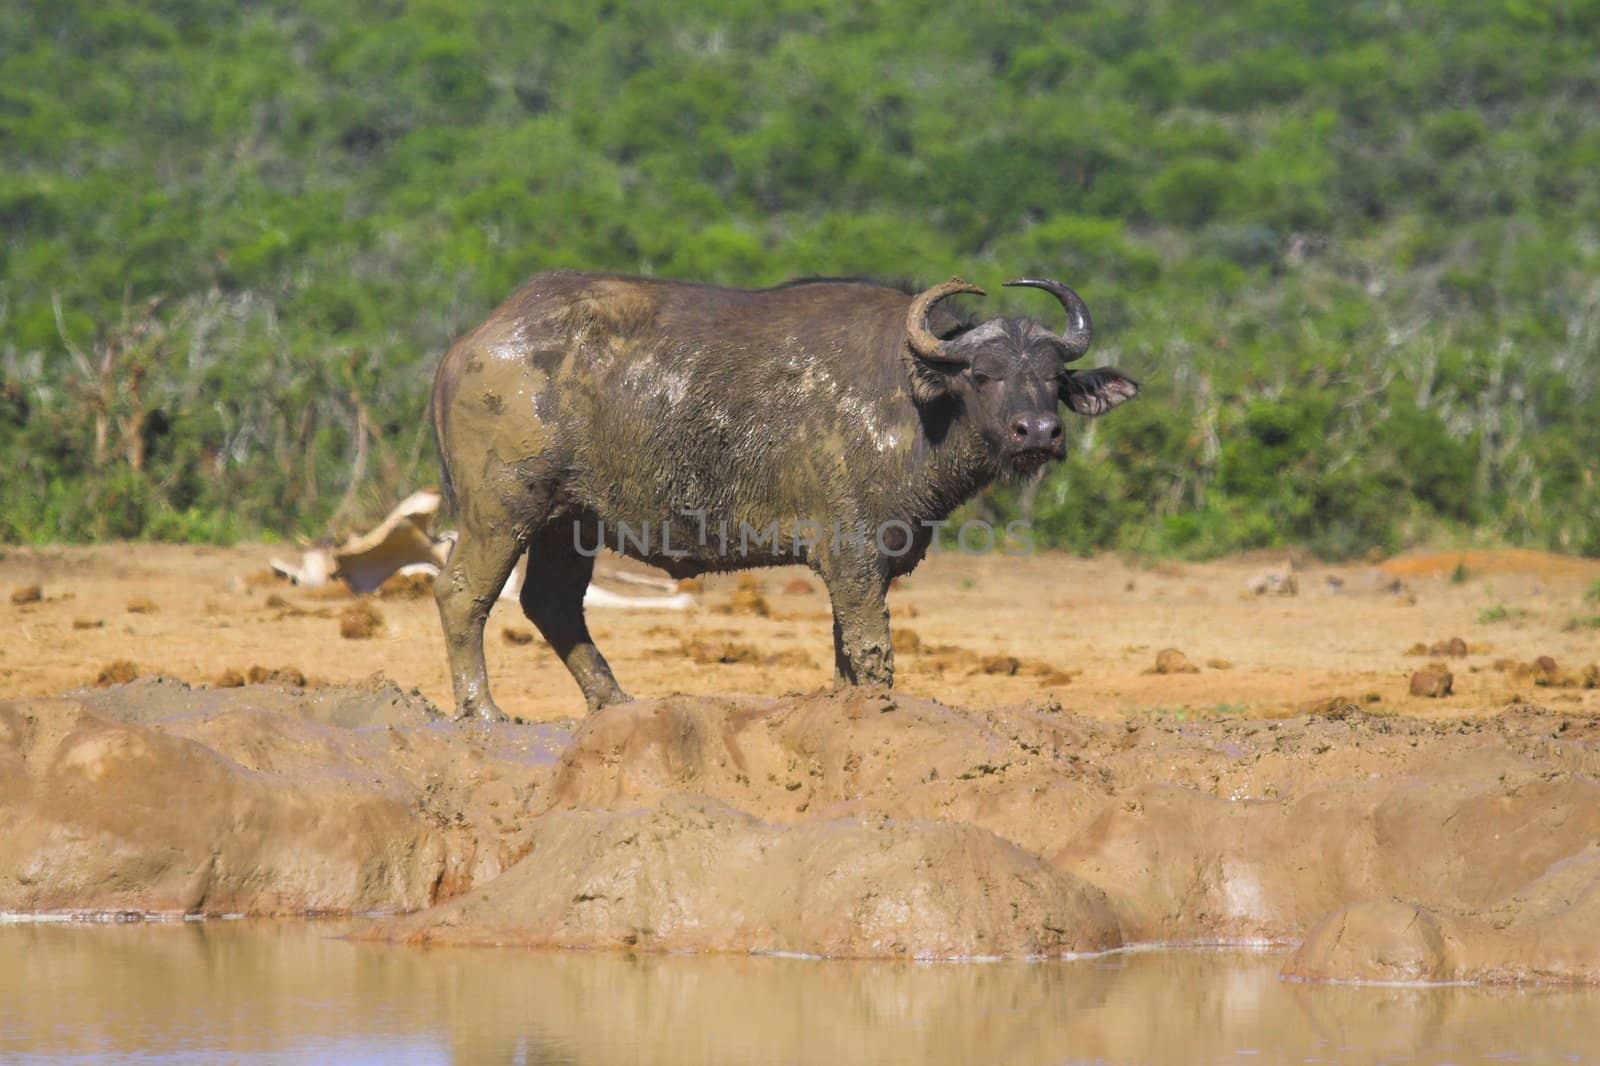 Muddy Buffalo by nightowlza